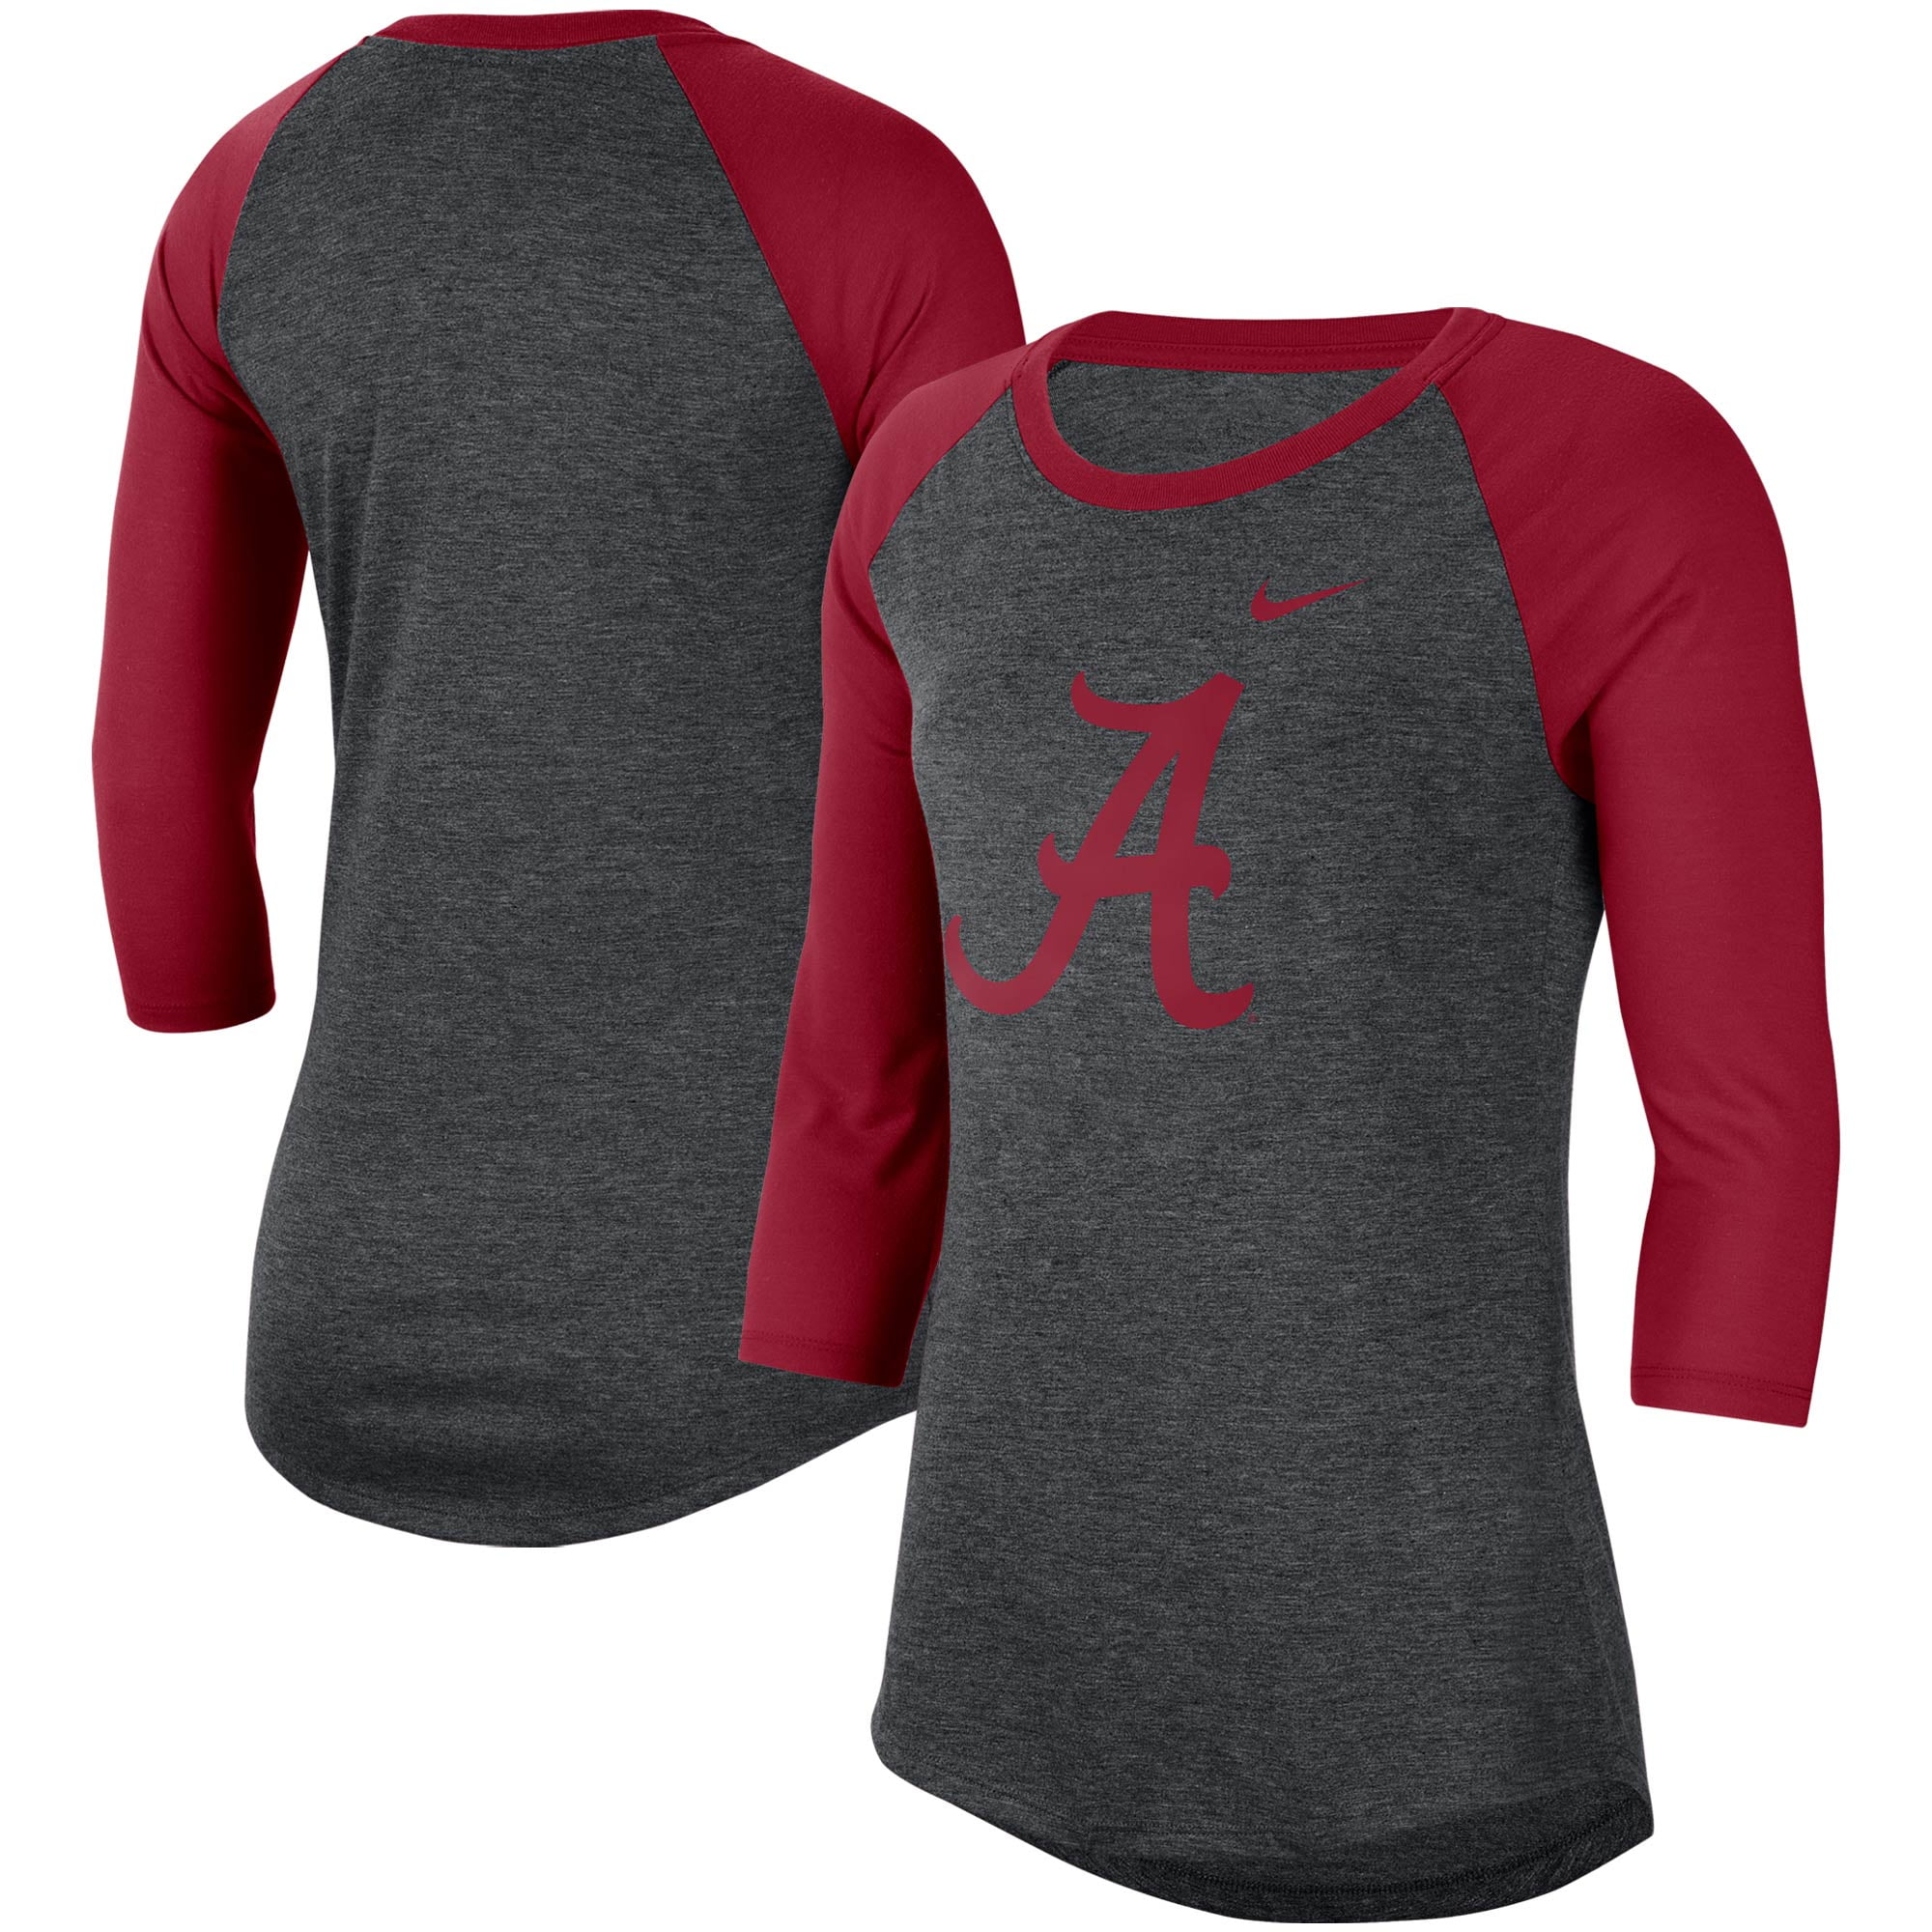 Alabama crimson tide womens shirts